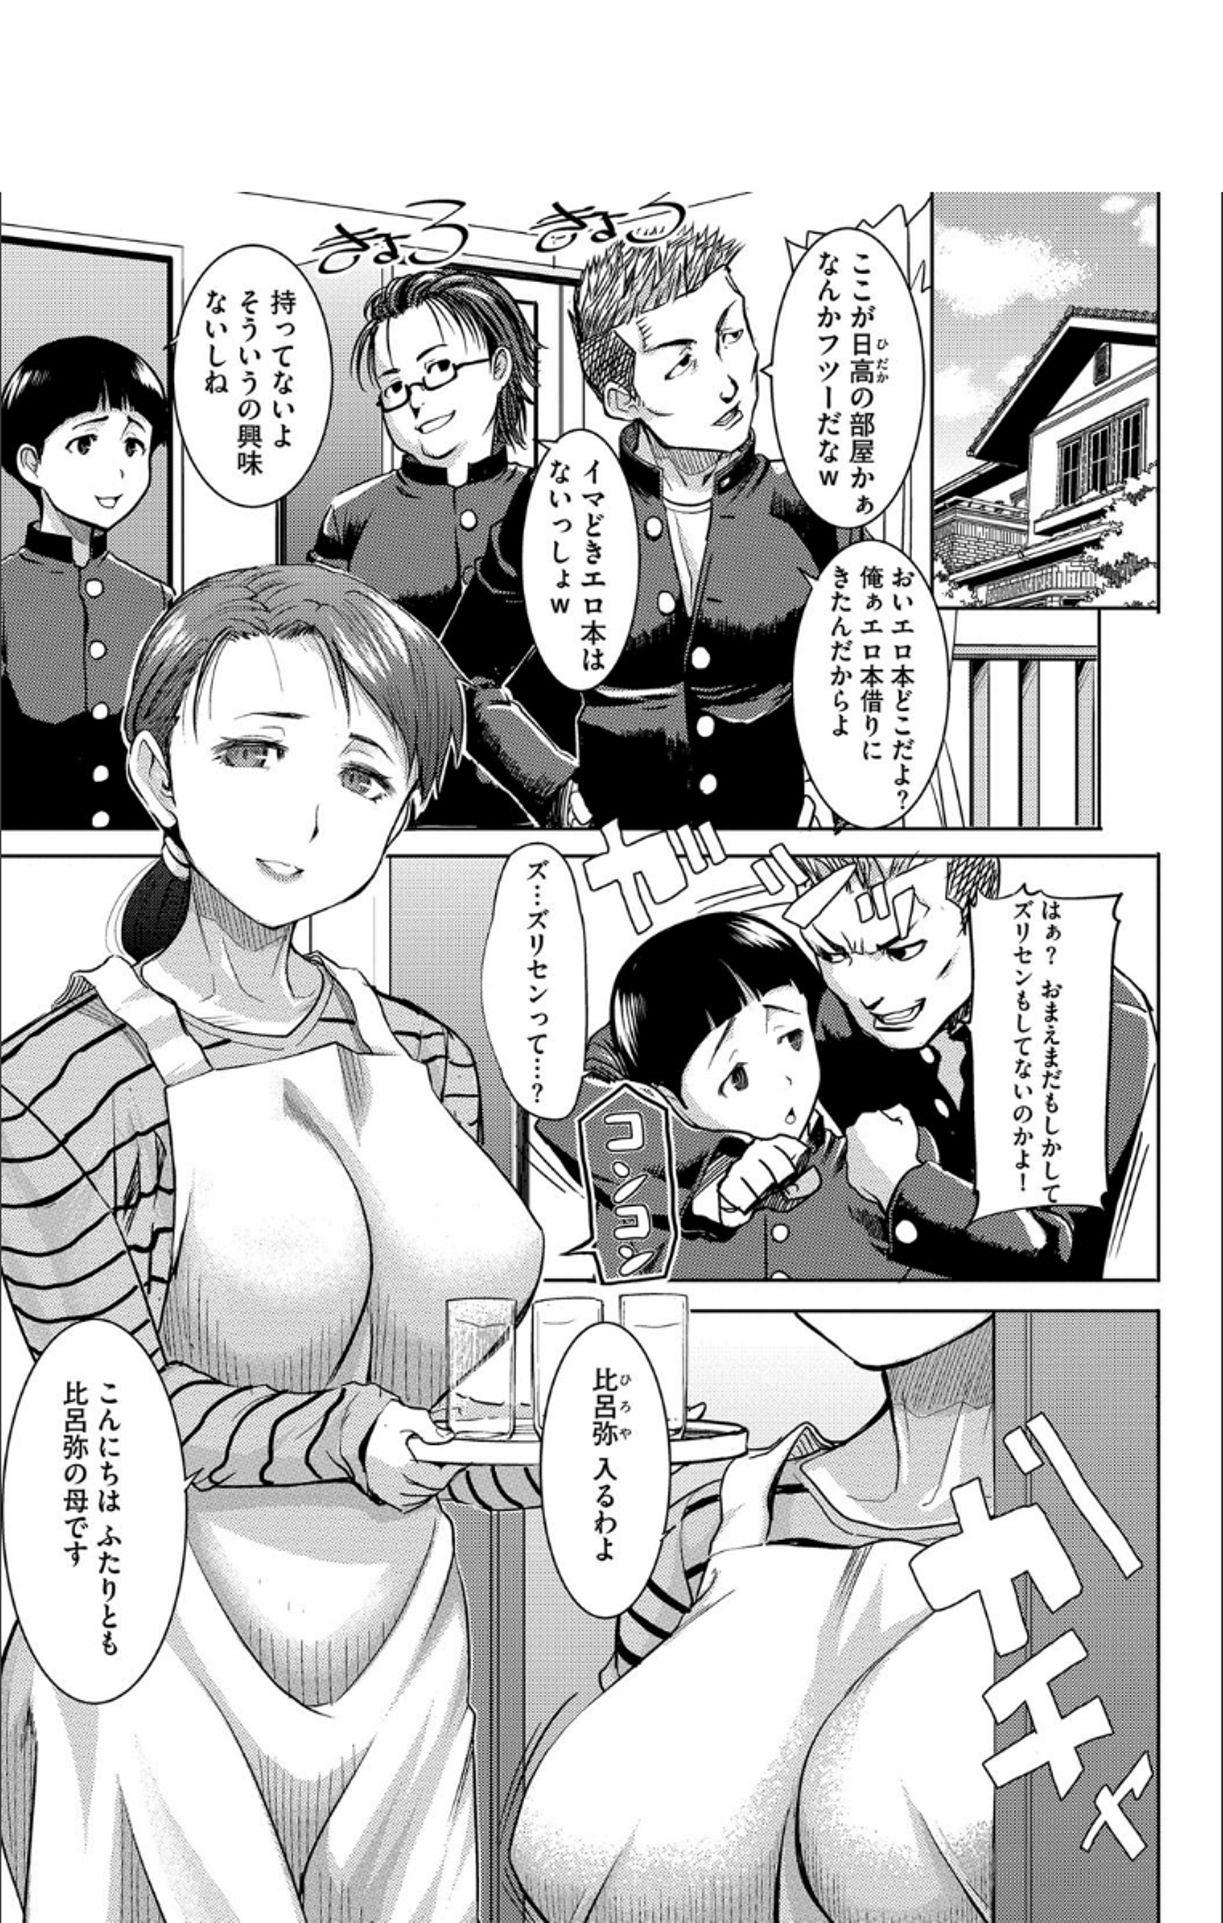 Big Ass Boku no Kazoku o Sarashimasu + DMM Gentei Tokuten Paper Twinkstudios - Page 6